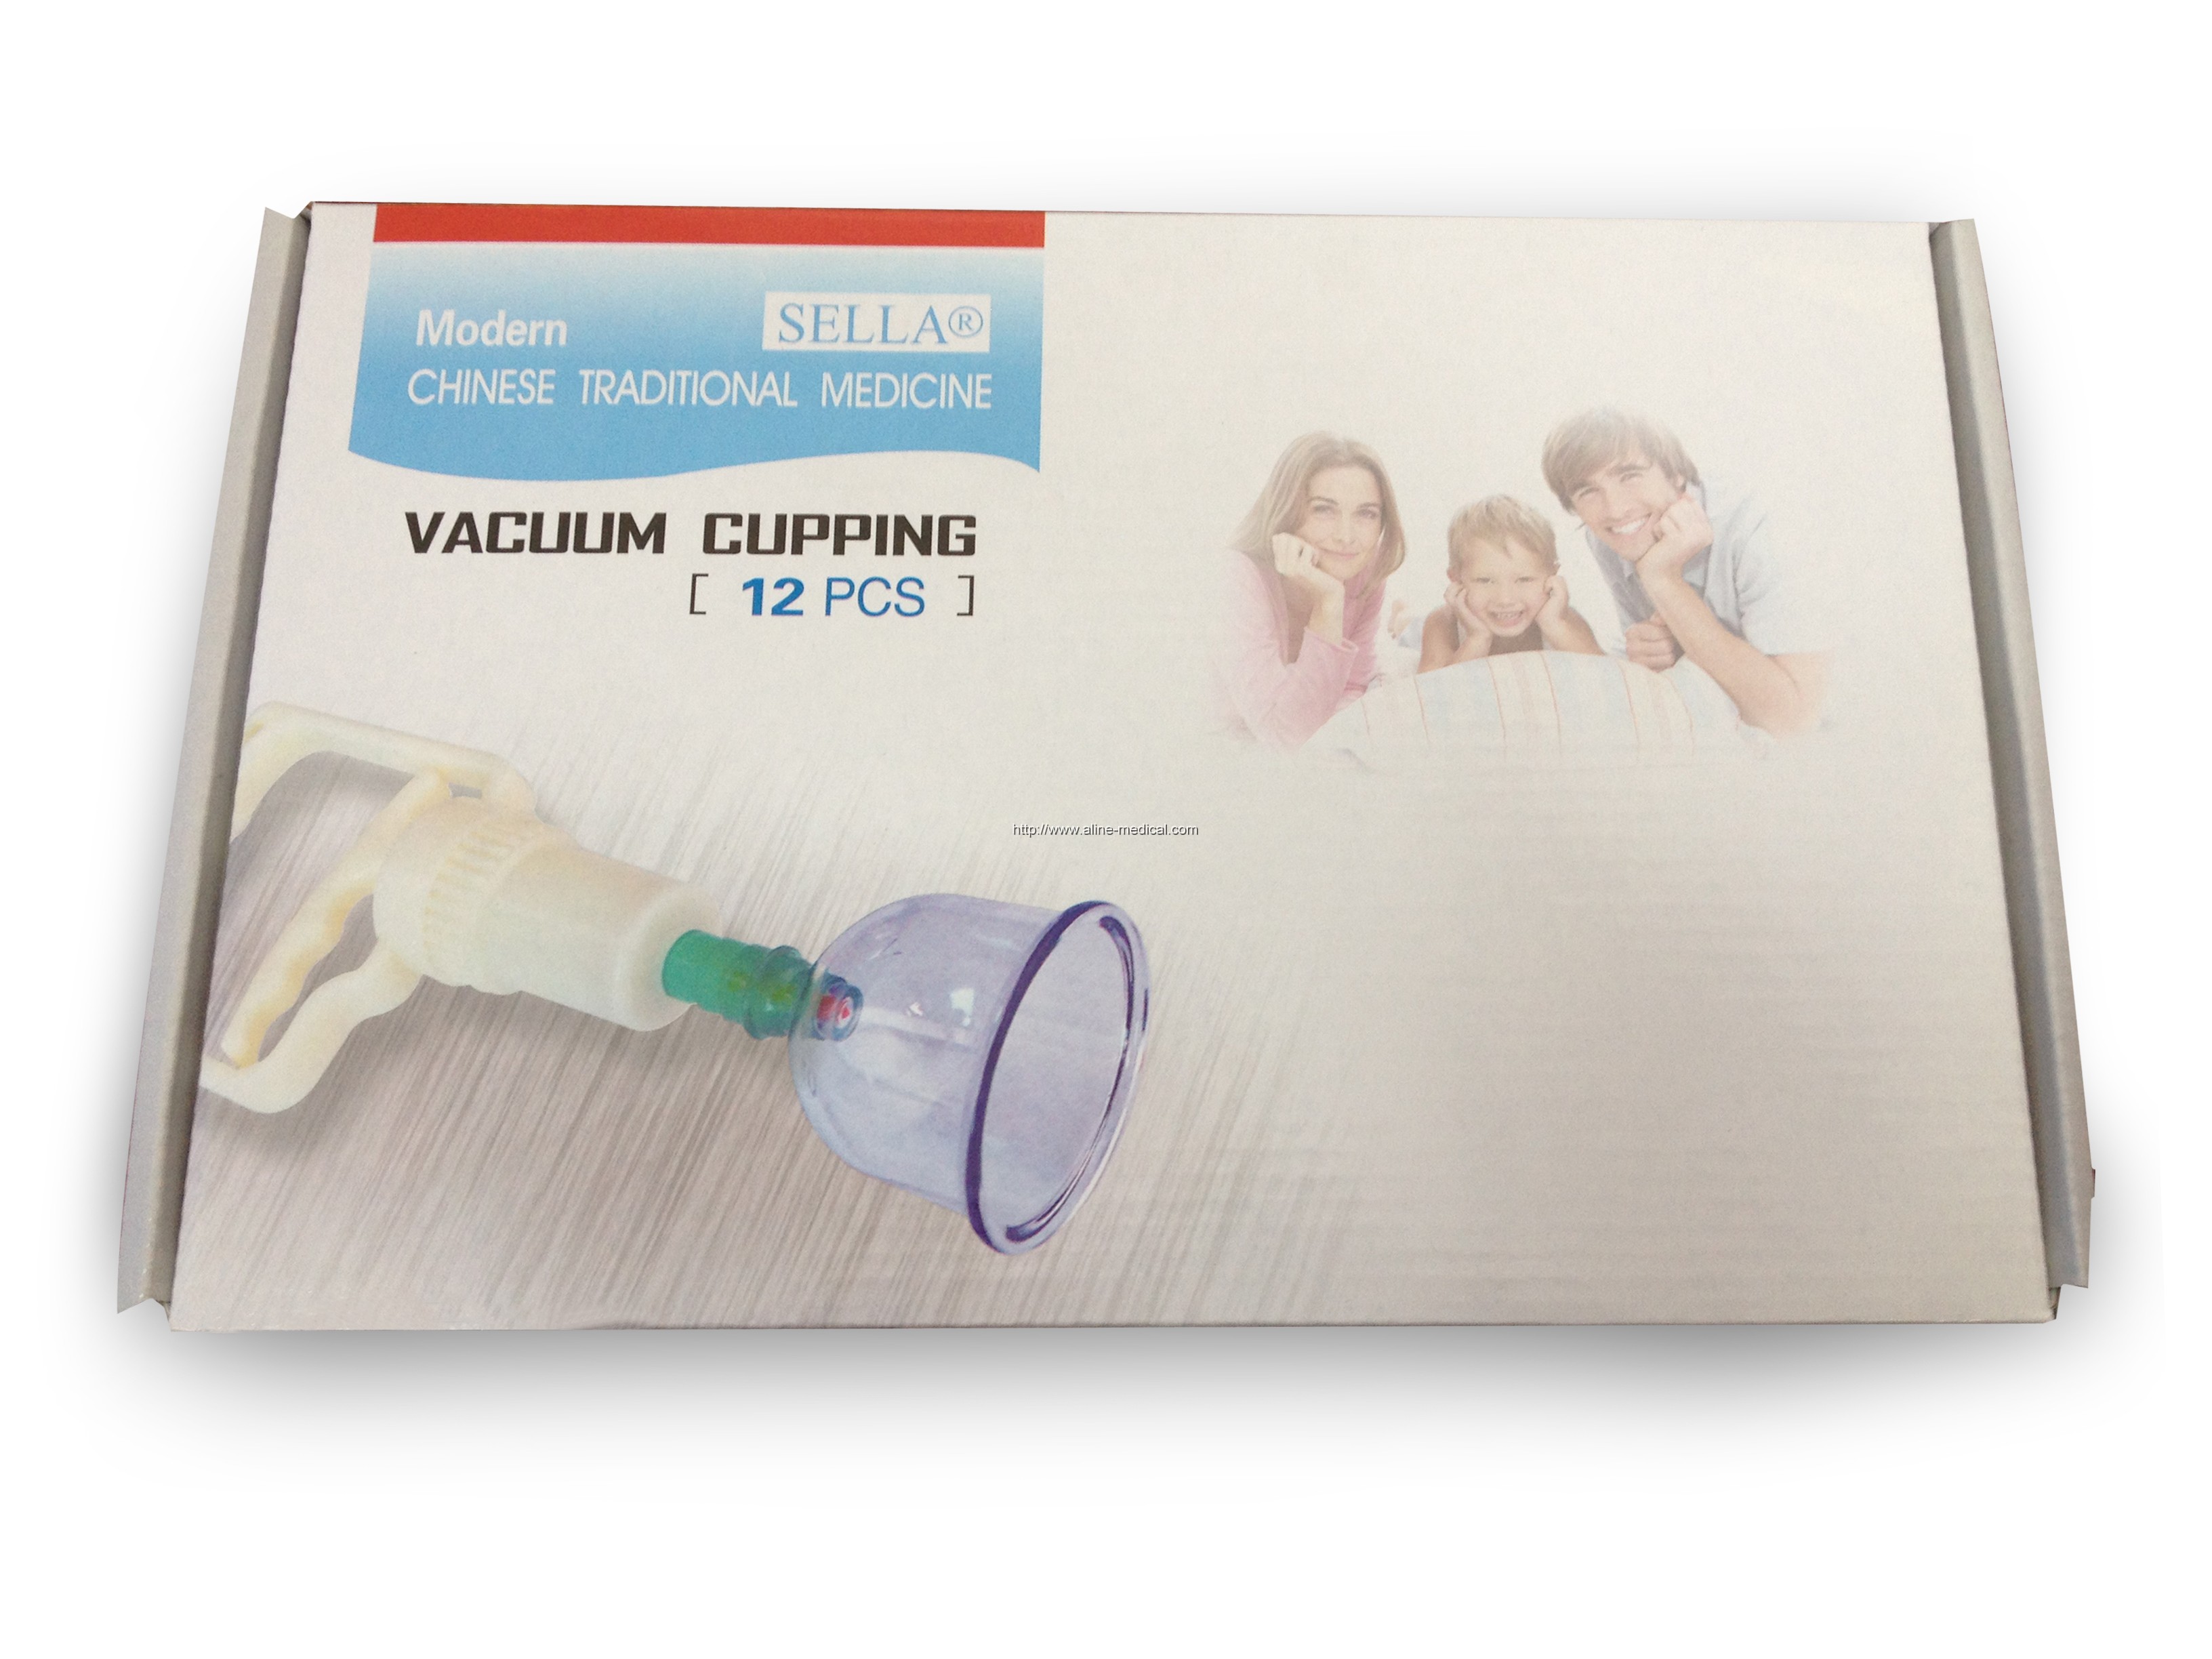 Vacuum cupping